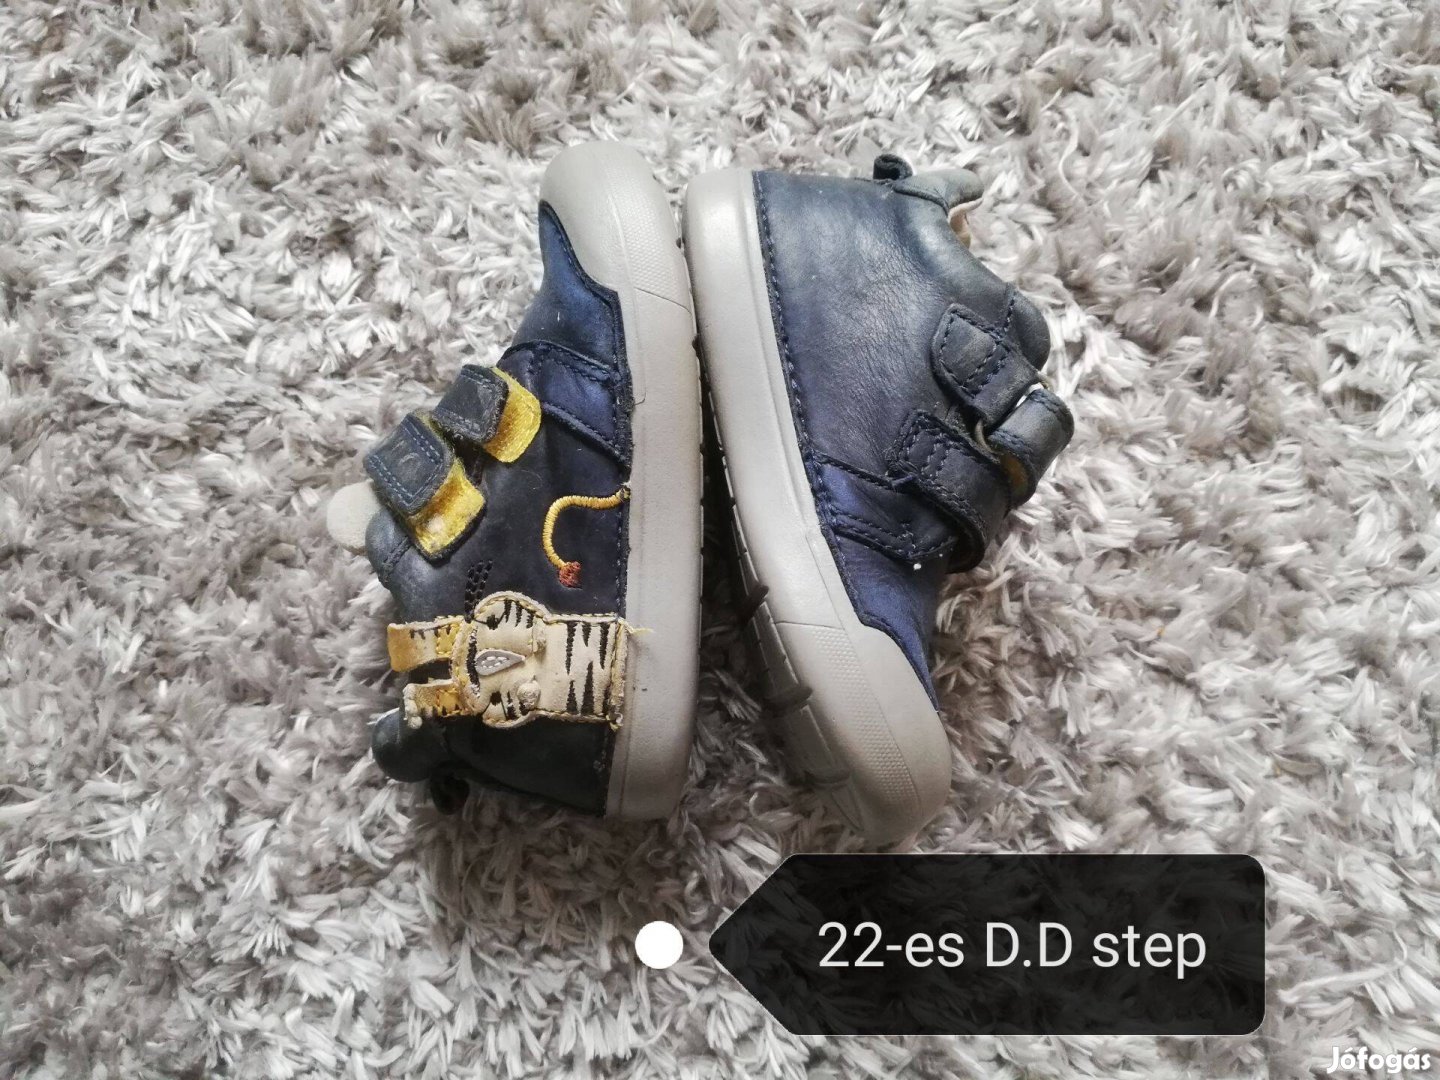 22-es D.d step átmeneti kisfiú cipő